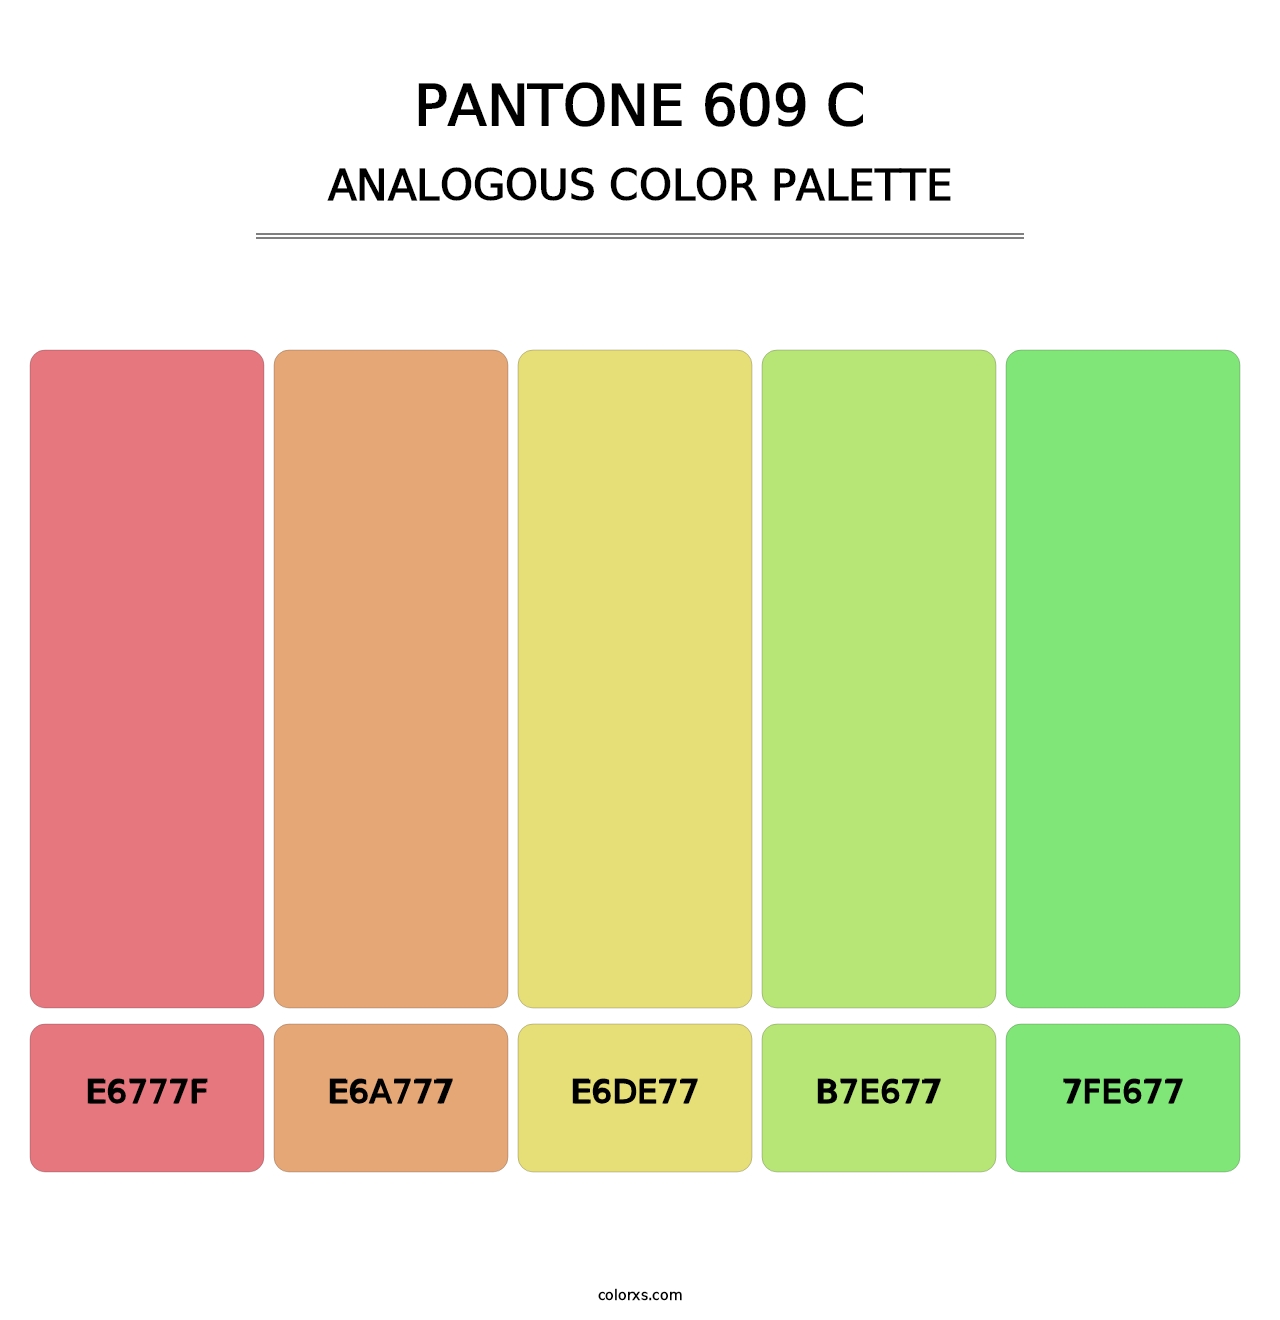 PANTONE 609 C - Analogous Color Palette